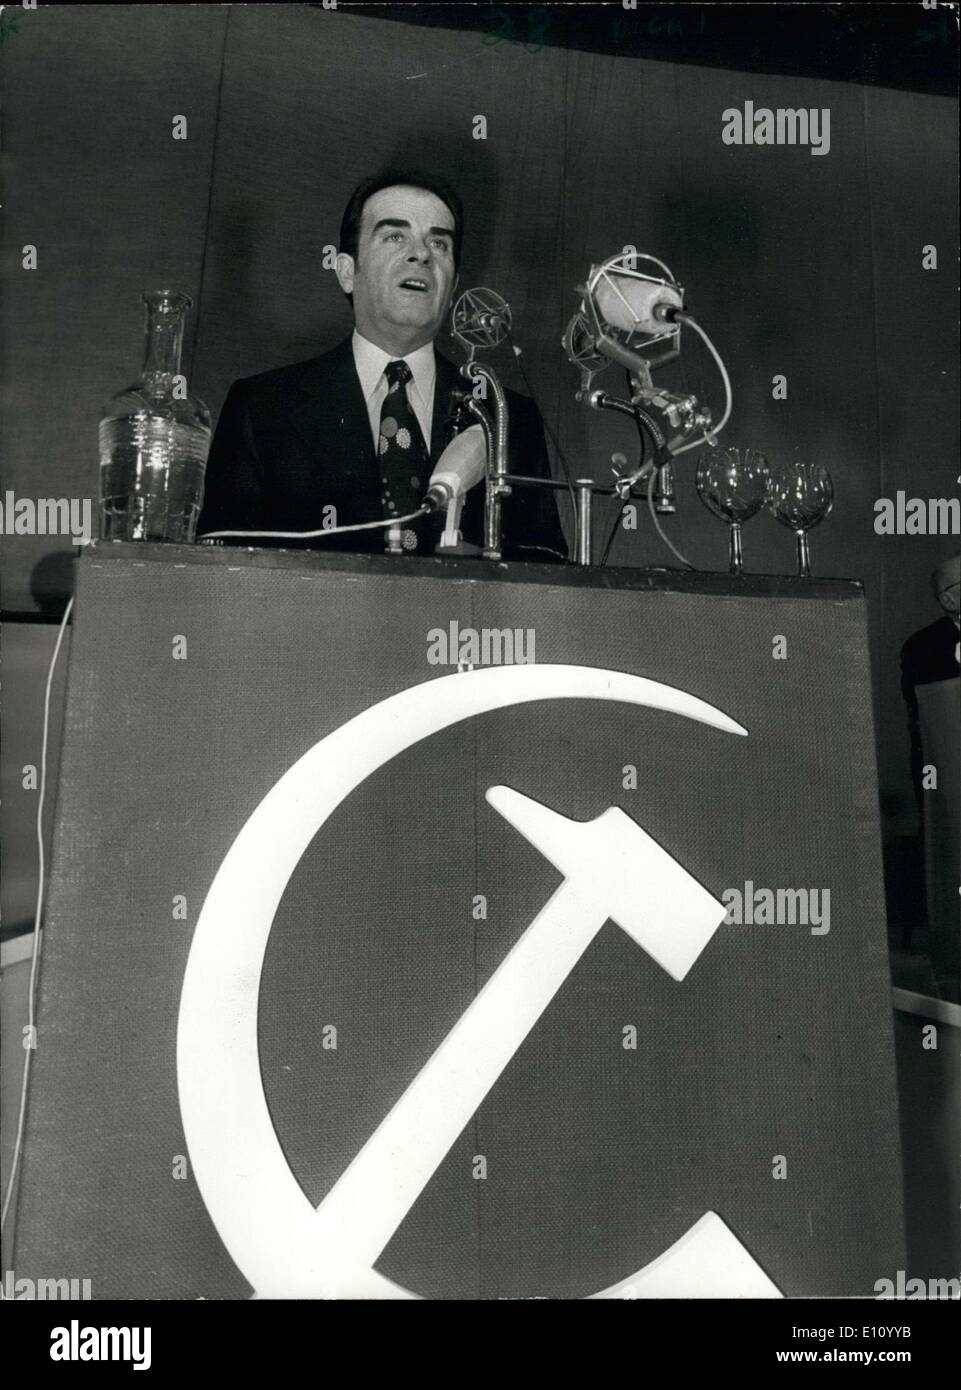 24 octobre 1974 - Secrétaire Général du Parti communiste français Georges Marchais a ouvert la 21e conférence du Parti communiste français à Vitry-Sur-Seine. Marchais est représenté sur le podium. Banque D'Images